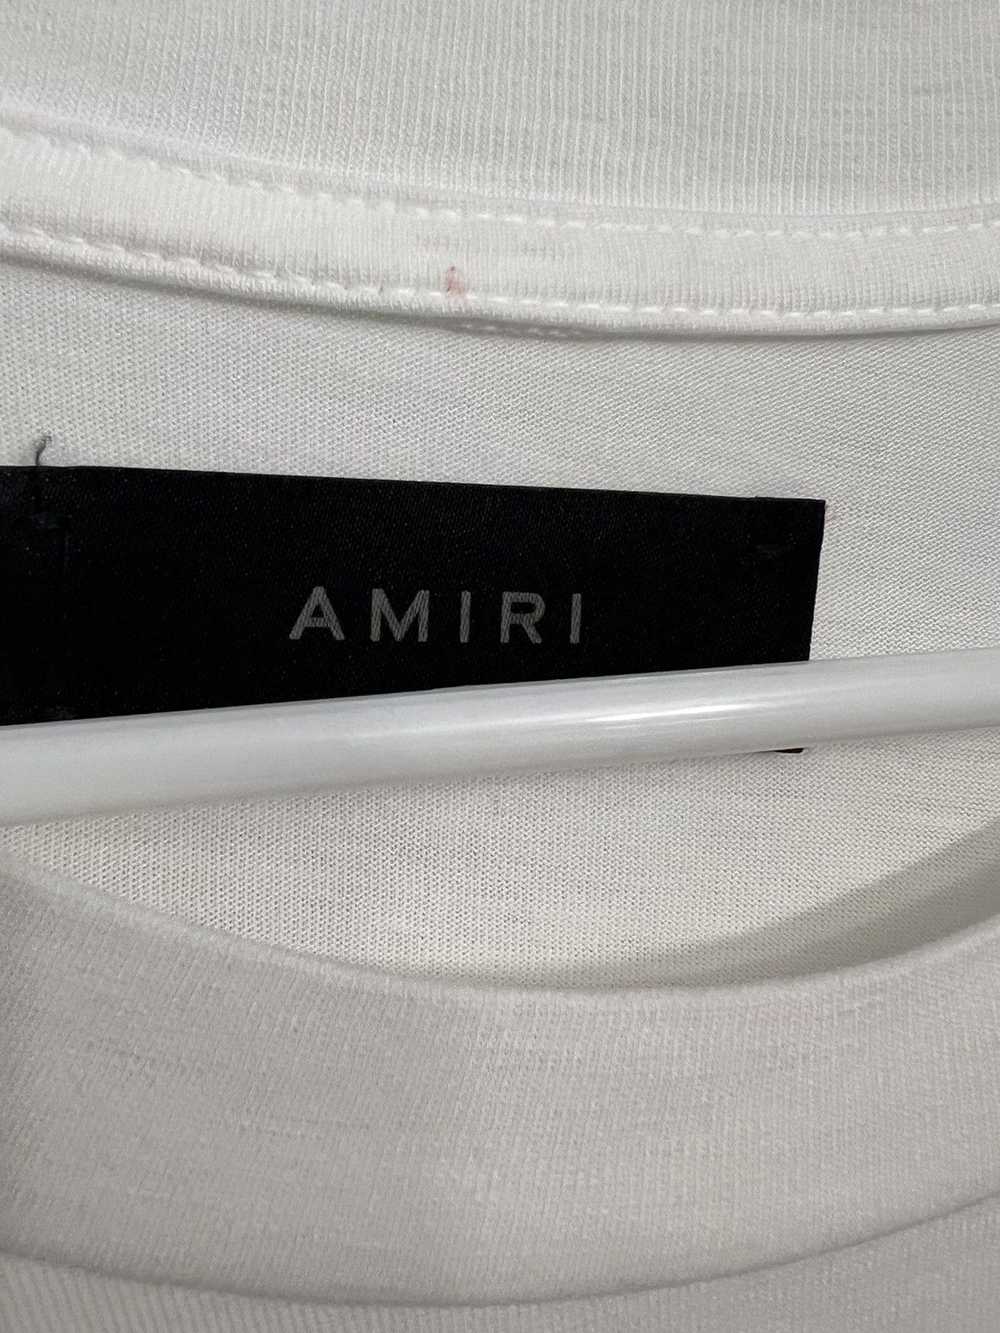 Amiri Amiri Logo T shirt white size large - image 3